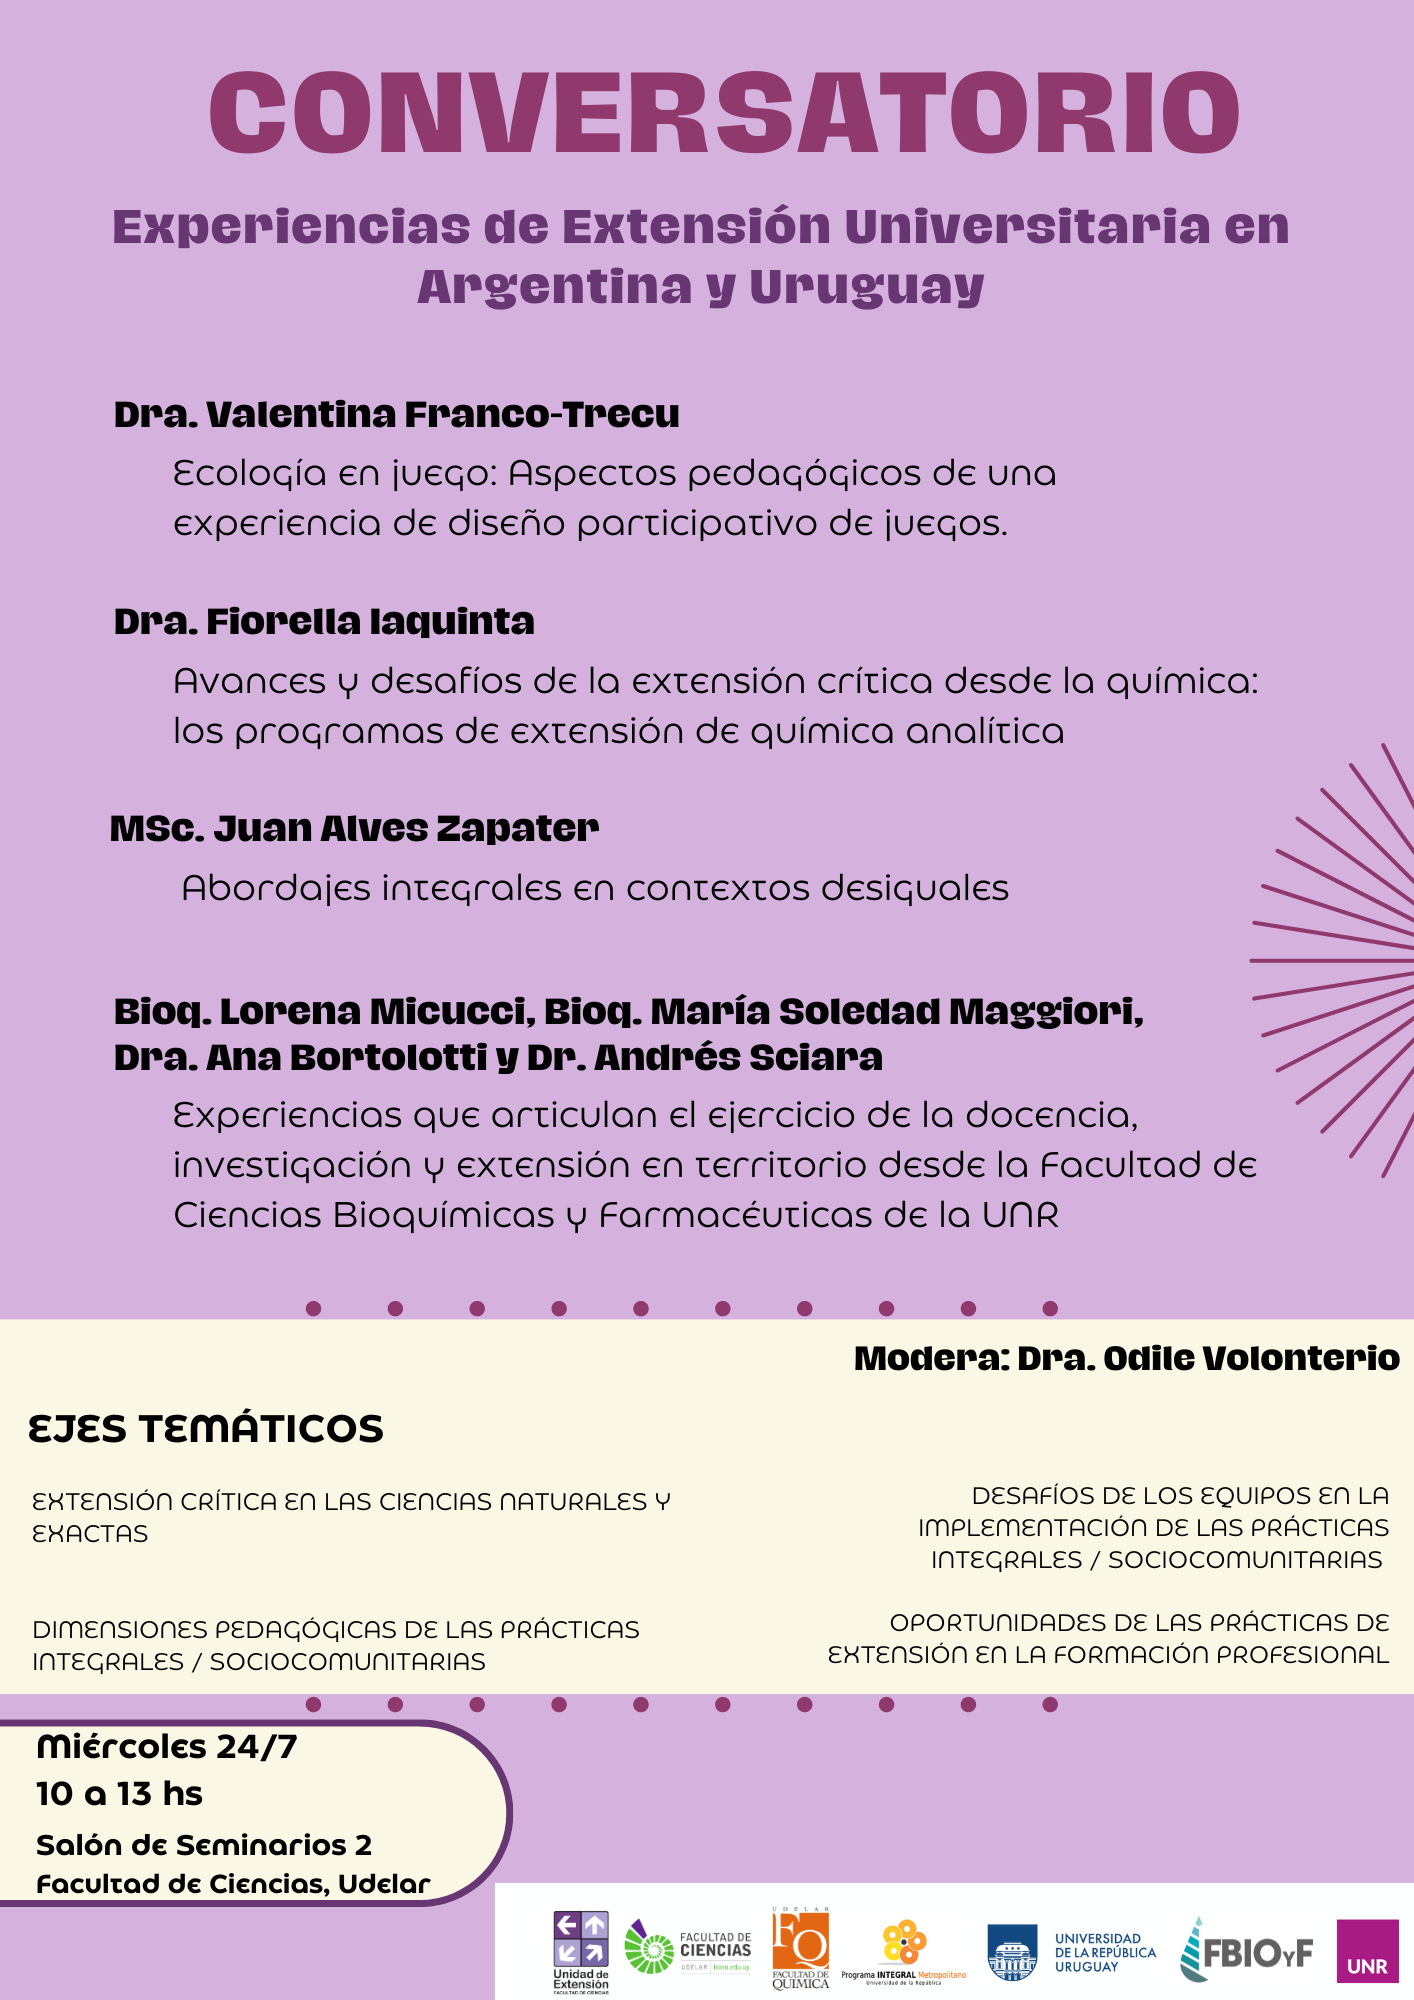 Afiche de conversatorio:Experiencias de Extensión Universitaria en Argentina y Uruguay el miércoles 24 de julio de 10 a 13hs